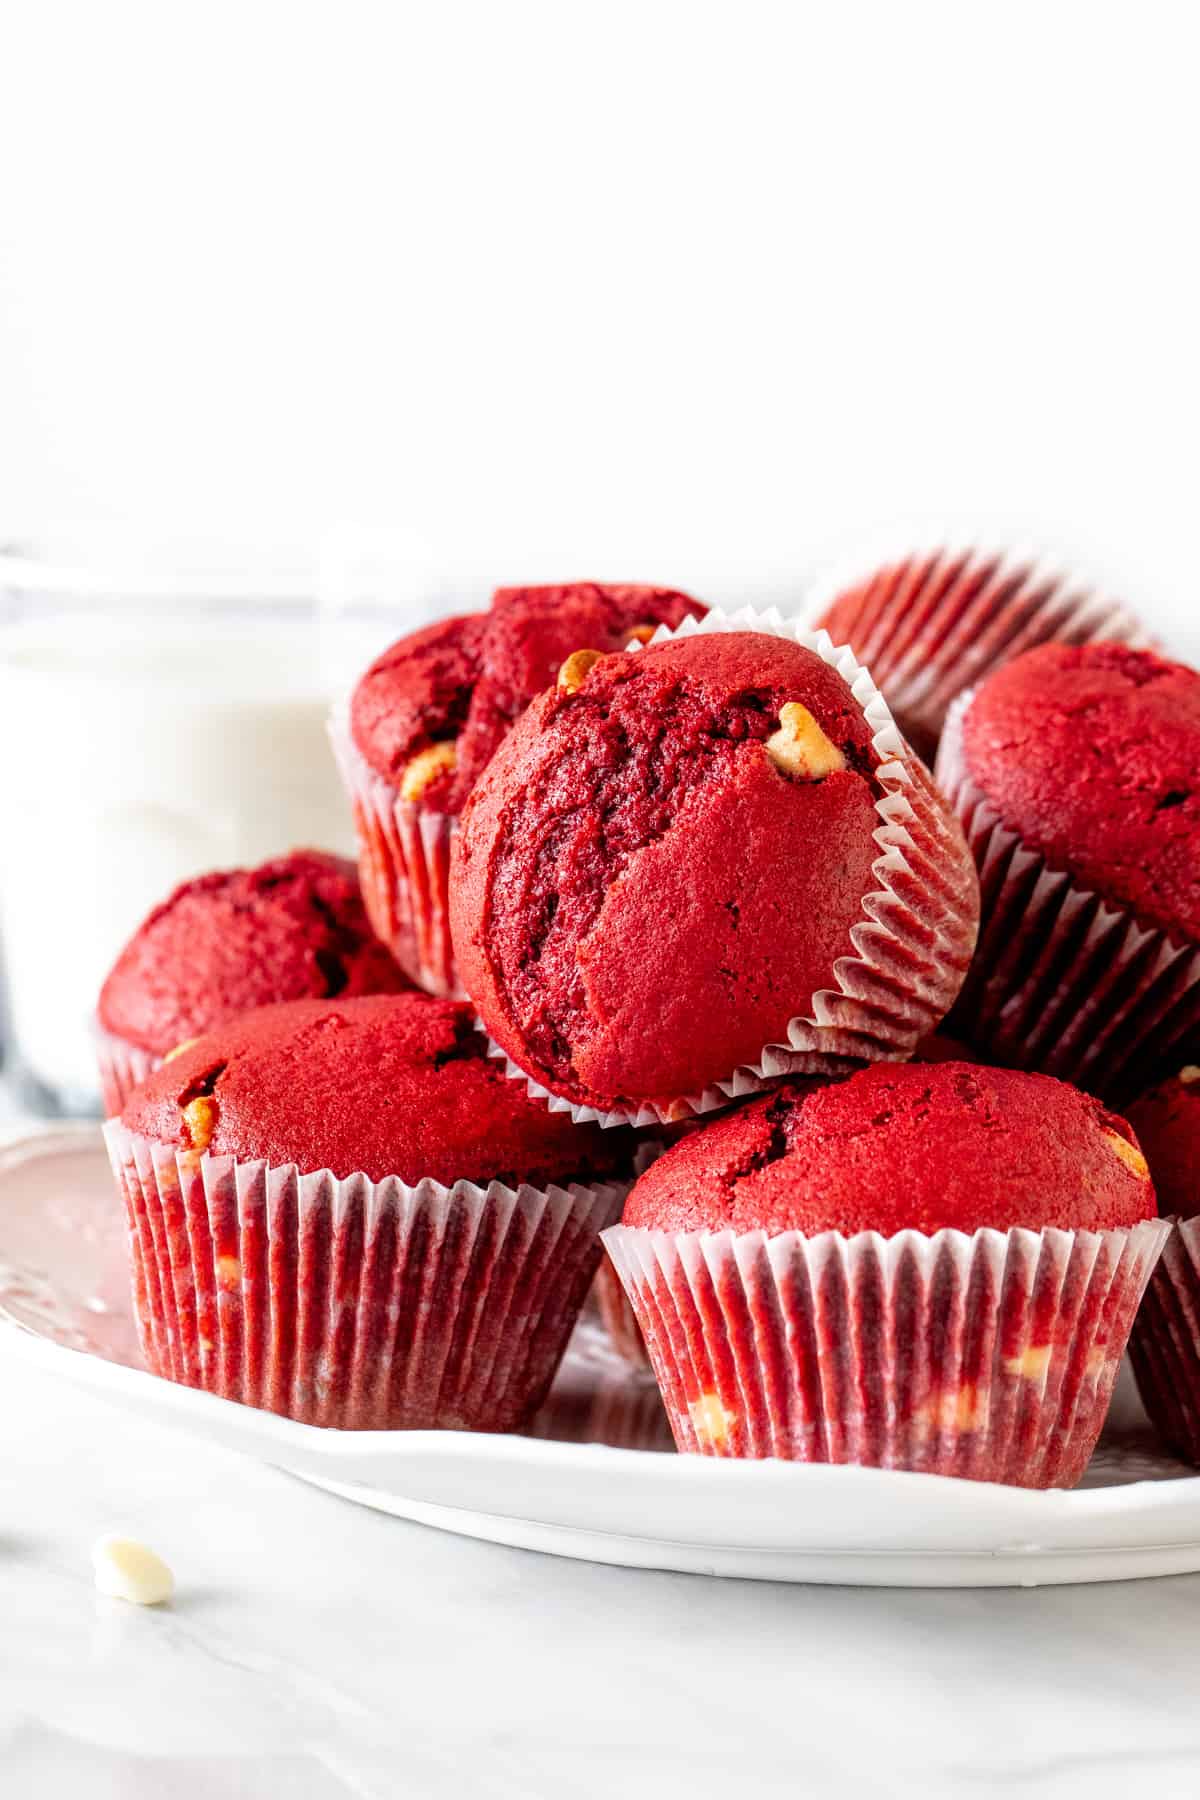 Plate of red velvet muffins